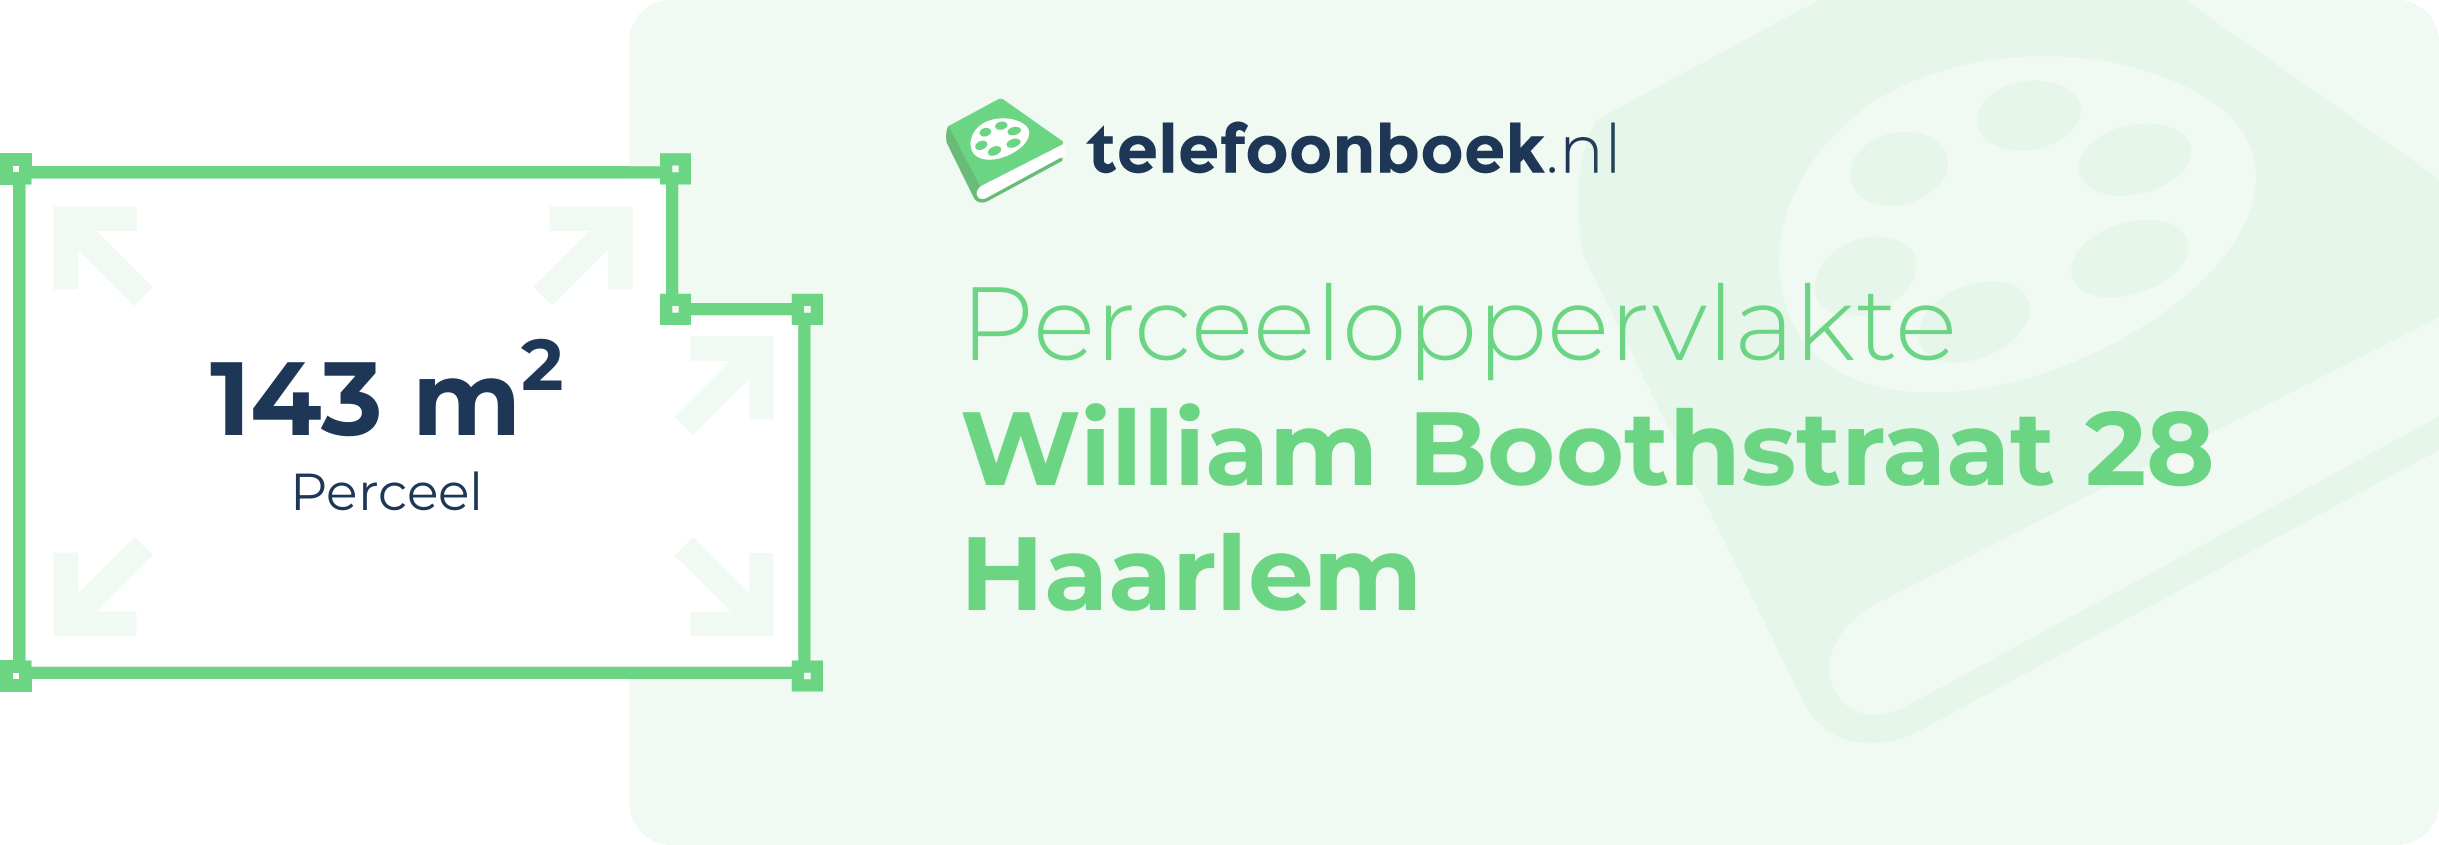 Perceeloppervlakte William Boothstraat 28 Haarlem